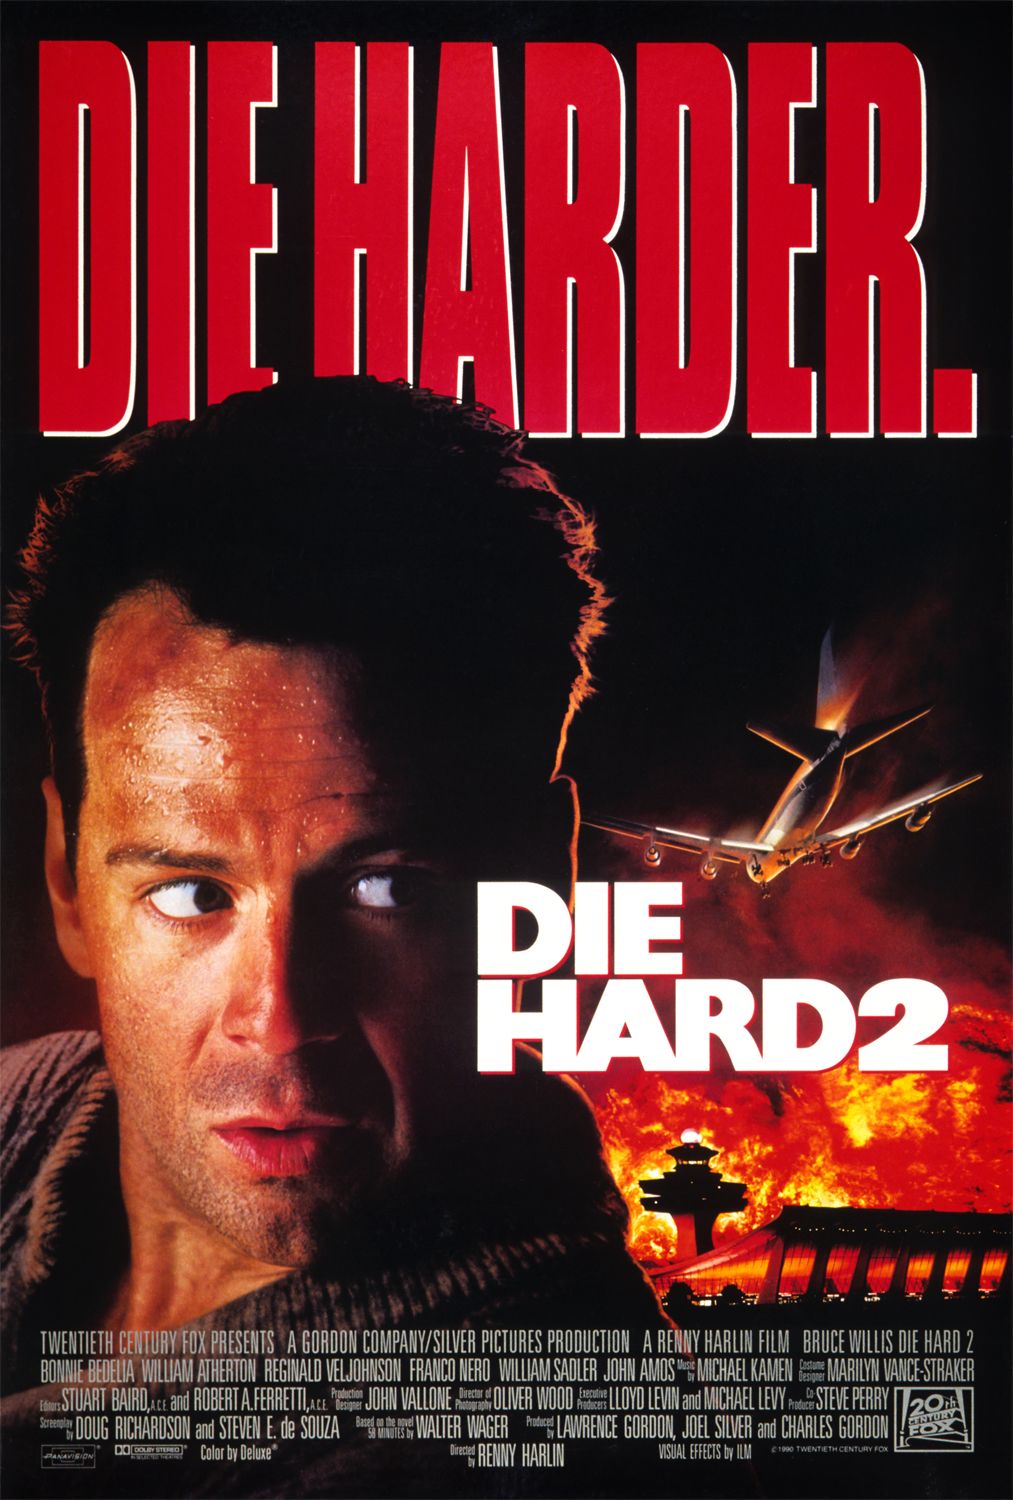 ดูหนังออนไลน์ฟรี Die Hard 2 ดาย ฮาร์ด 2 อึดเต็มพิกัด